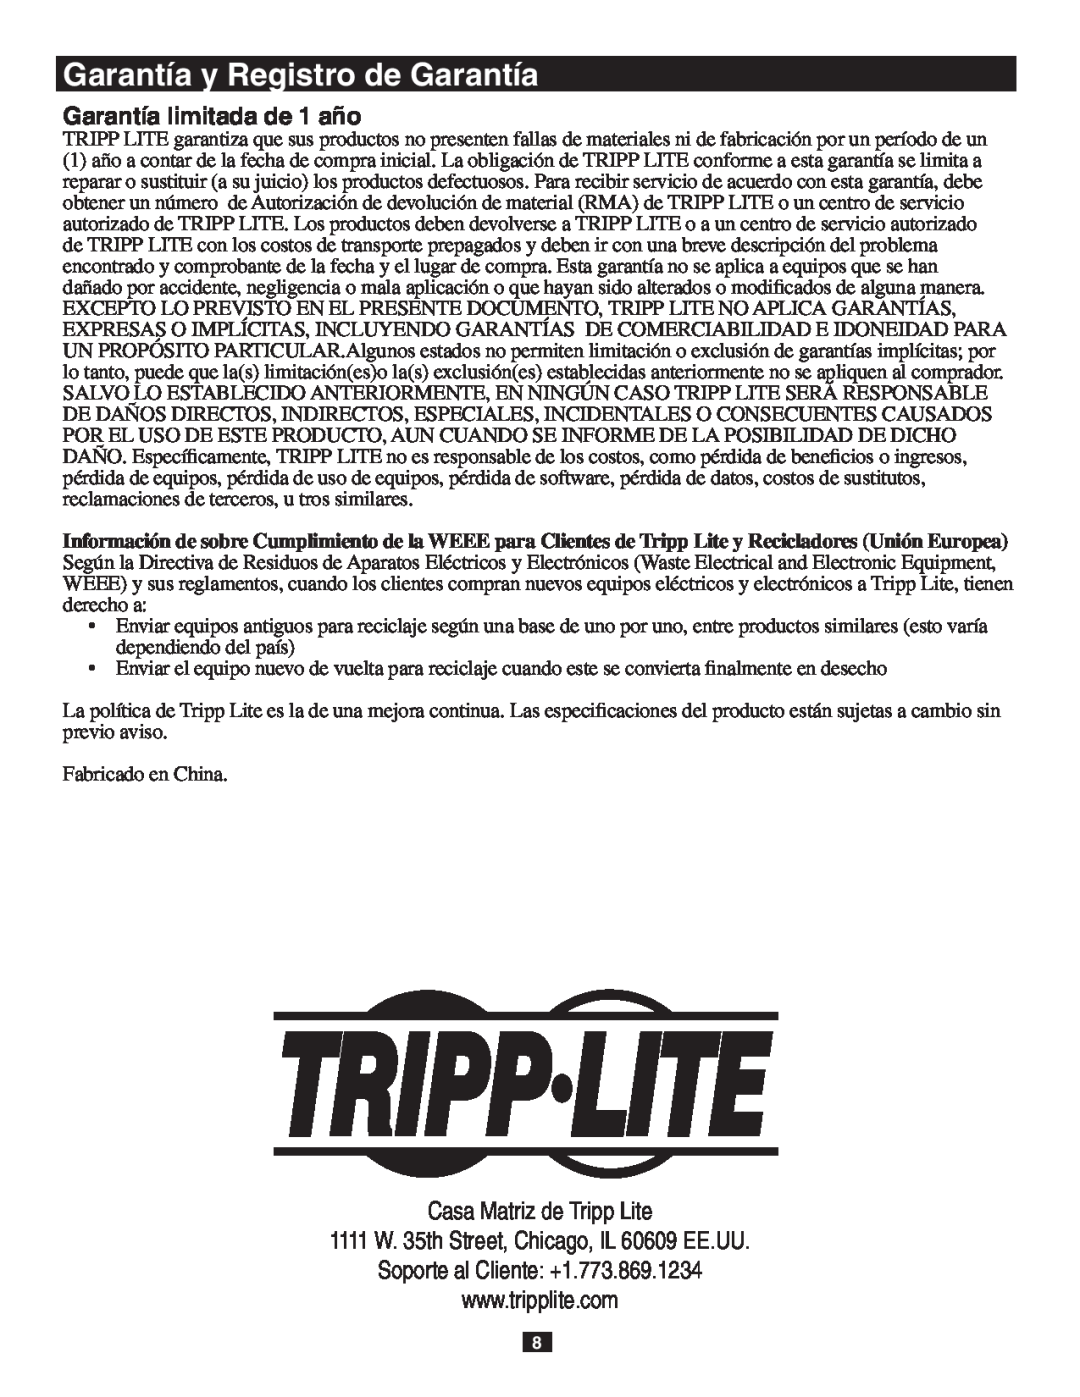 Tripp Lite B119-302-R owner manual Garantía limitada de 1 año, Garantía y Registro de Garantía, Casa Matriz de Tripp Lite 